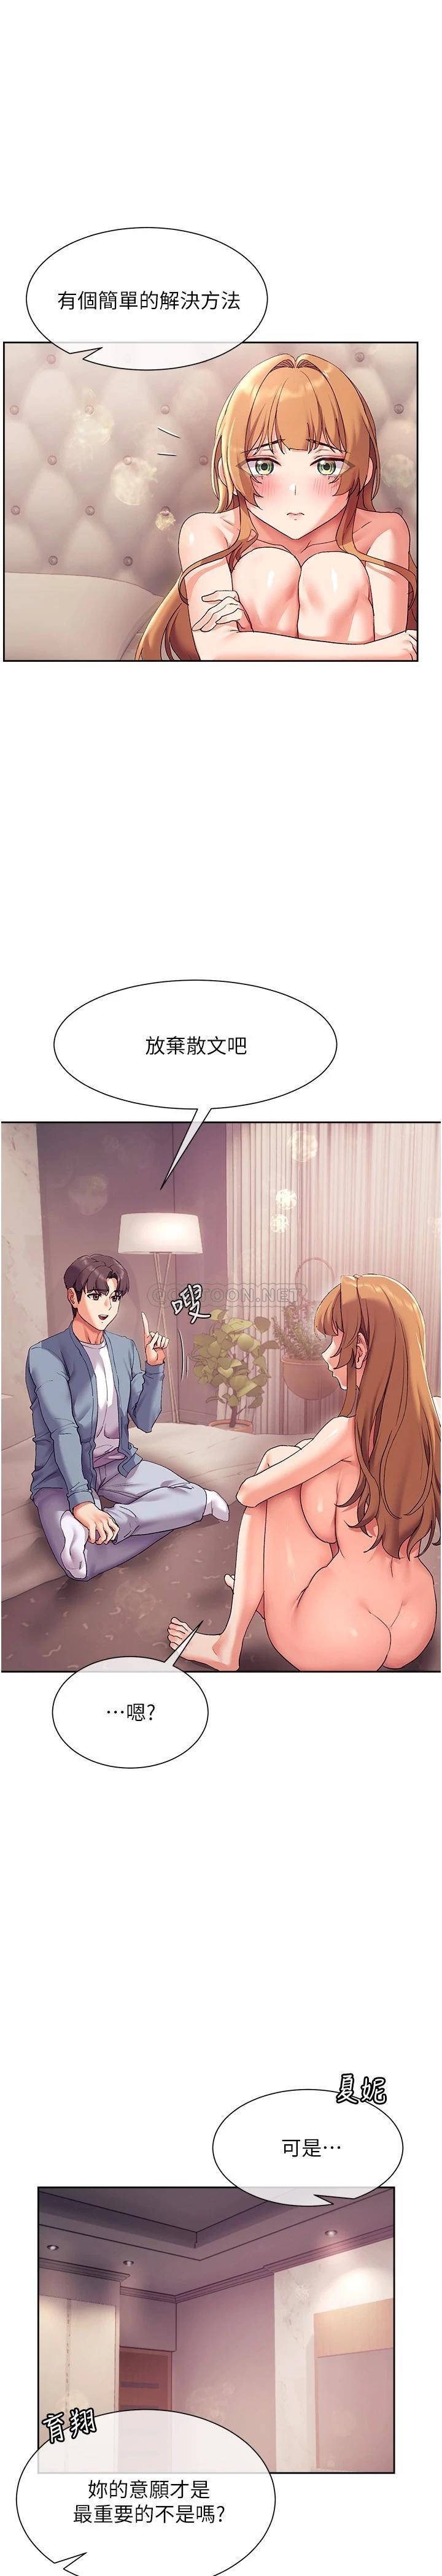 韩国污漫画 現上教學 第17话这就是舒服的感觉吗? 8